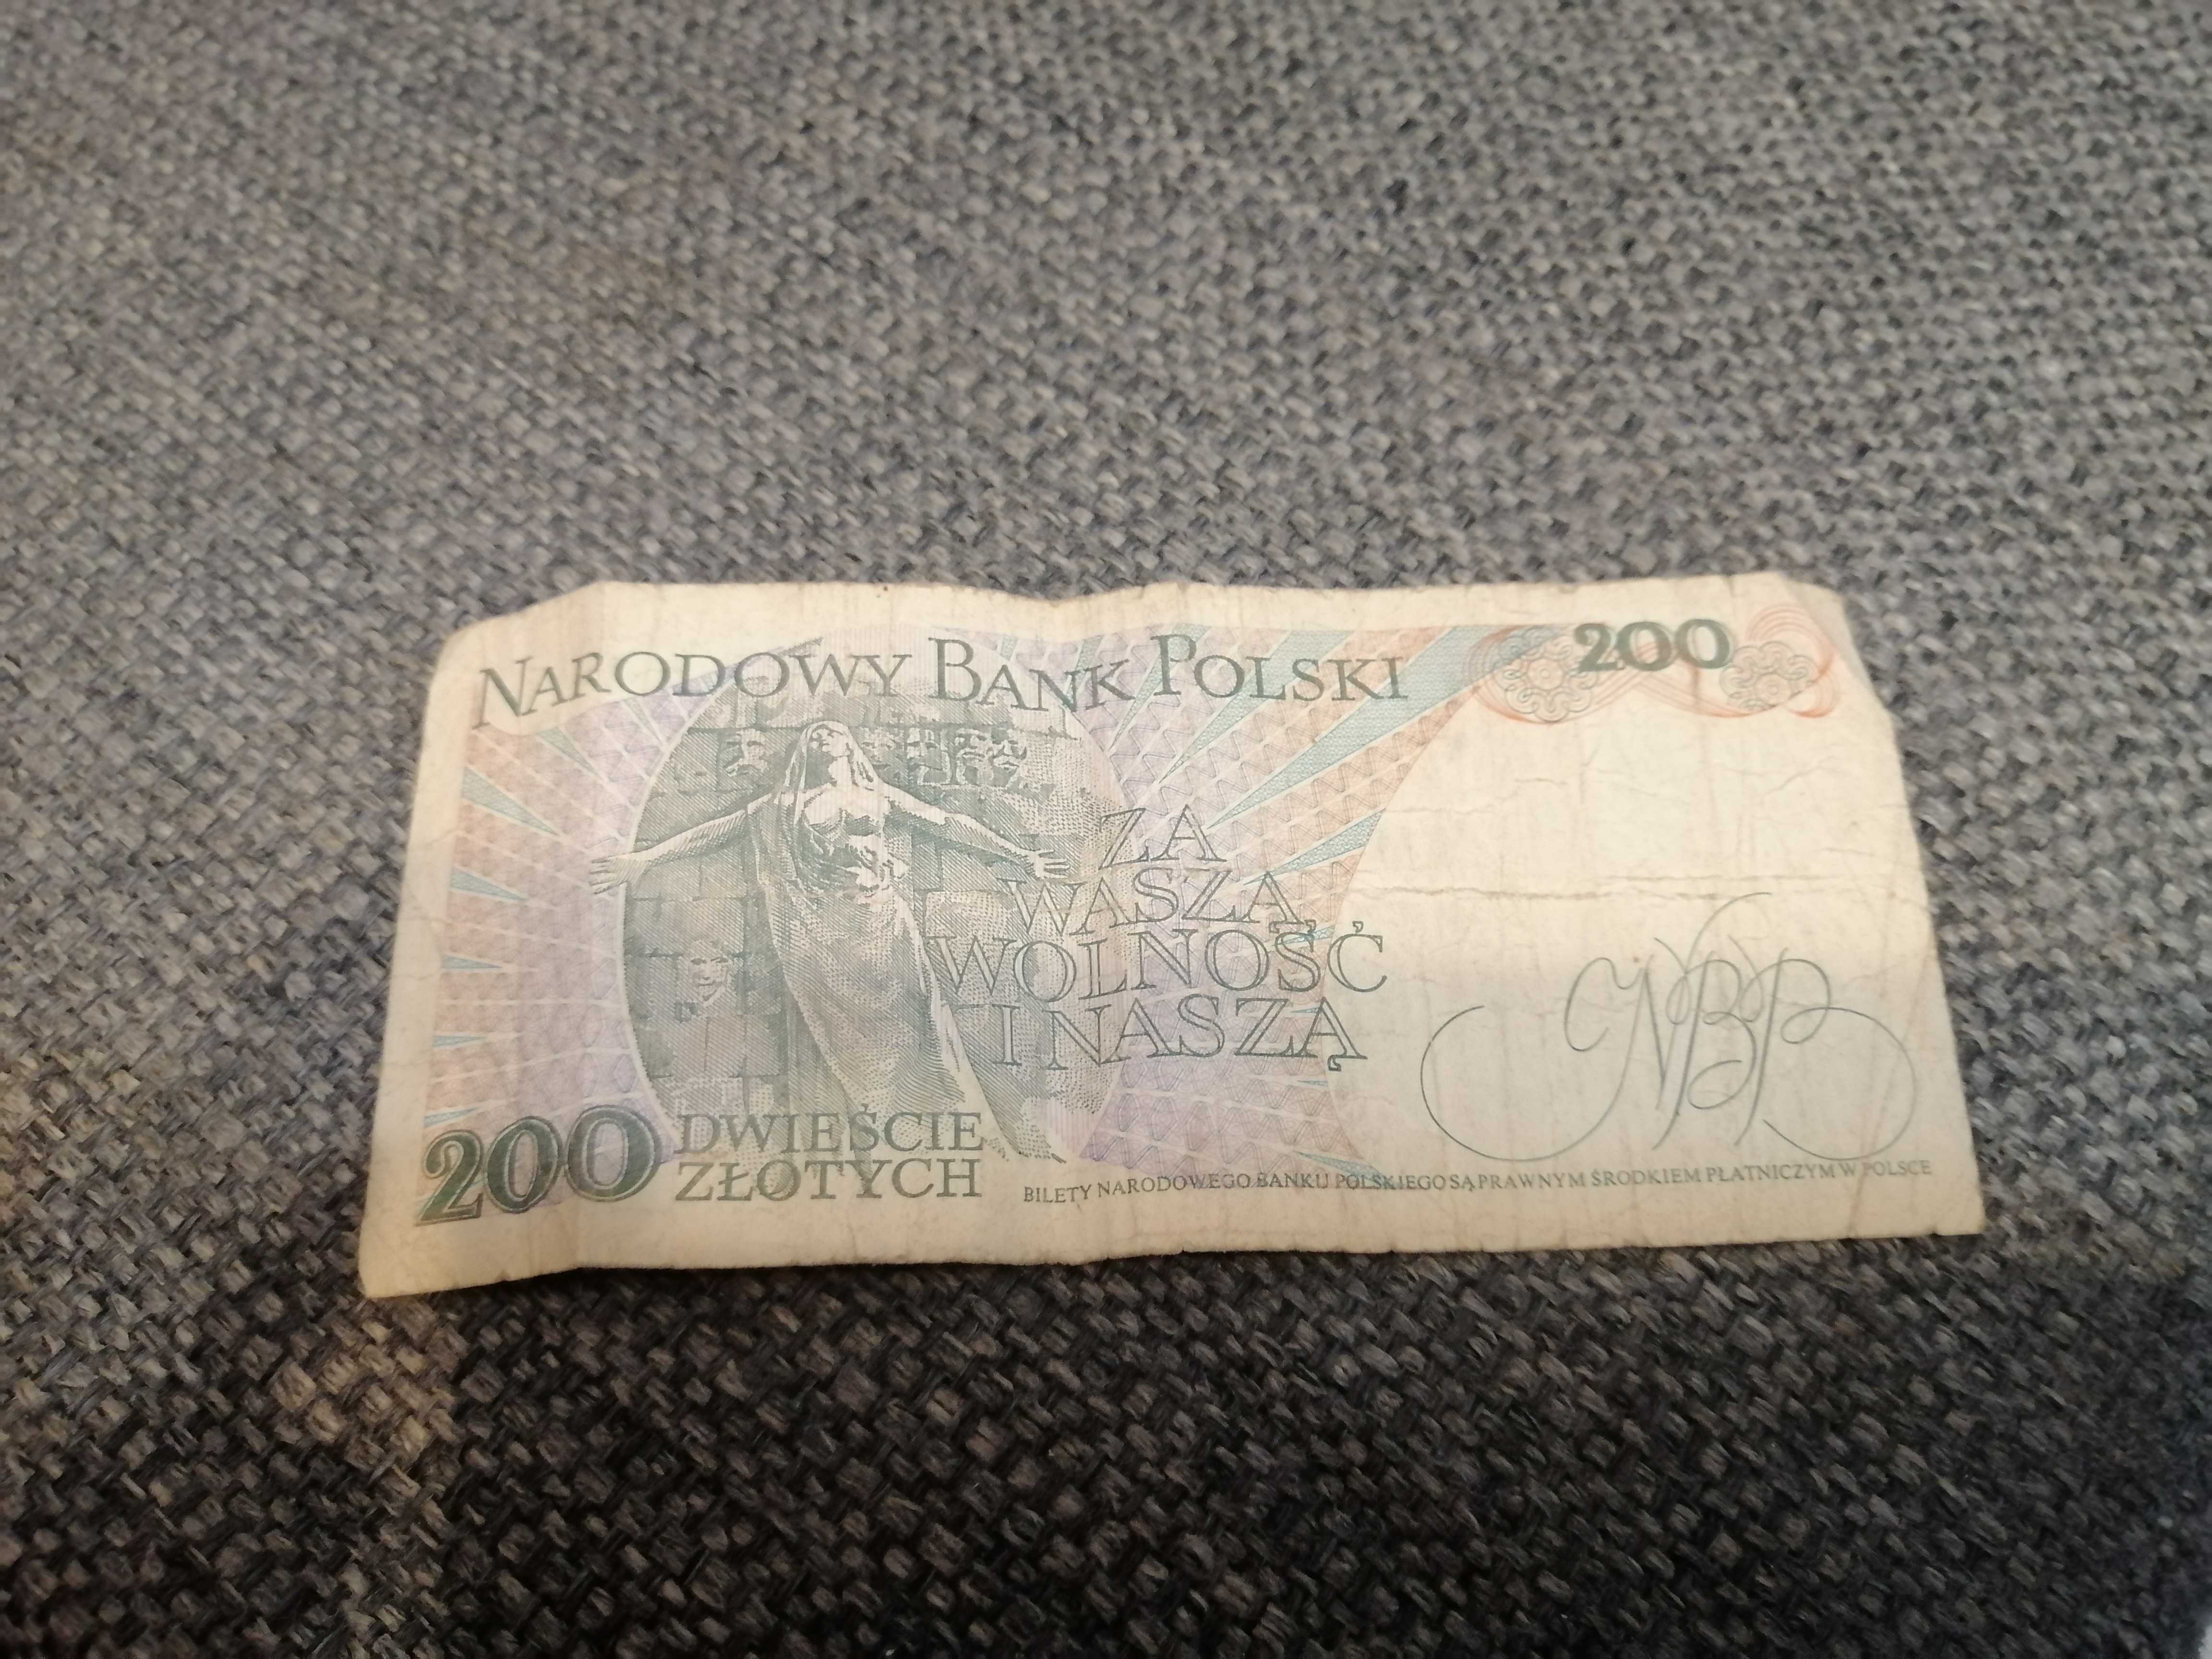 Banknot 200 zł z 1.12.1988 r.